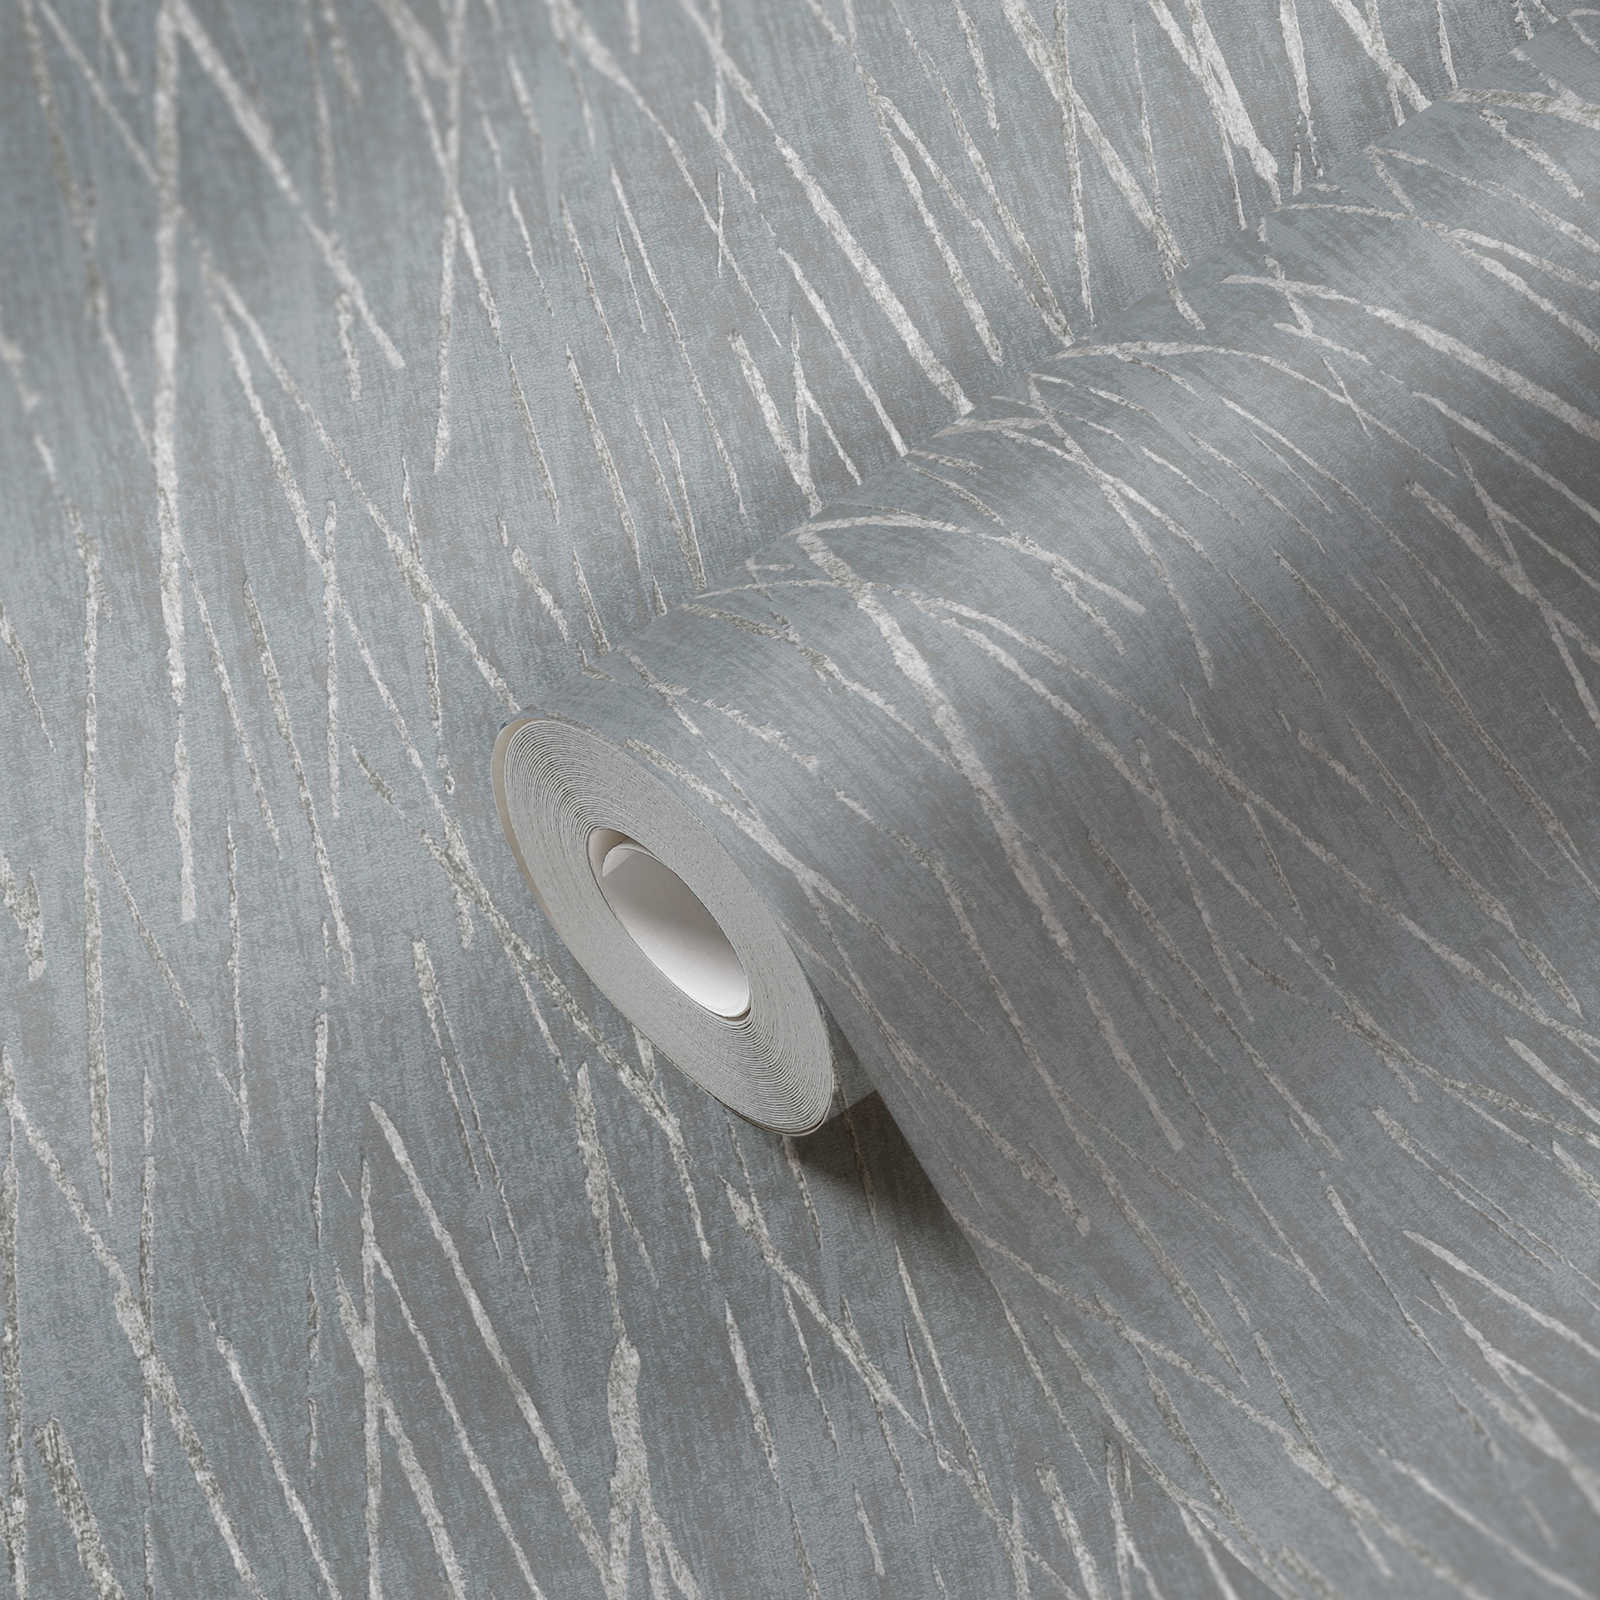             Papel pintado no tejido con diseño de naturaleza y efecto metálico - gris, metálico
        